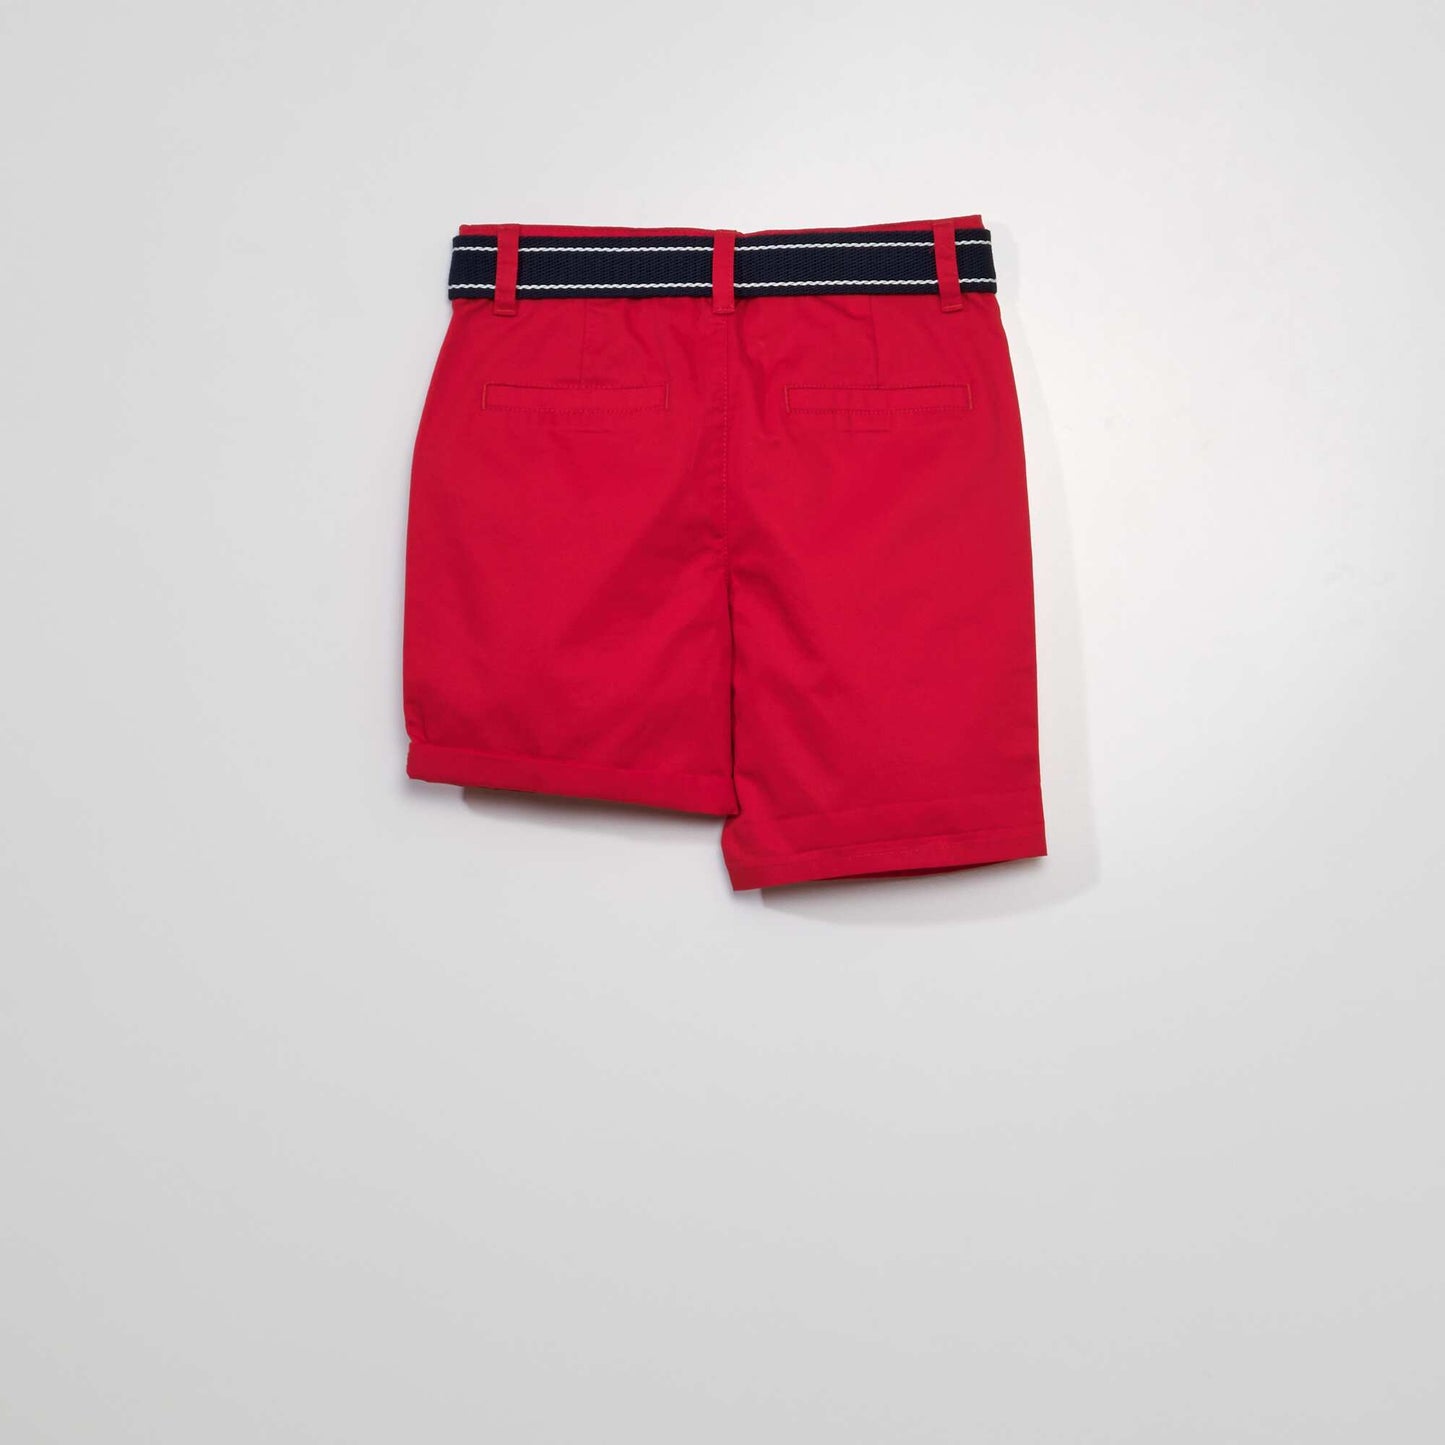 Chino Bermuda shorts red